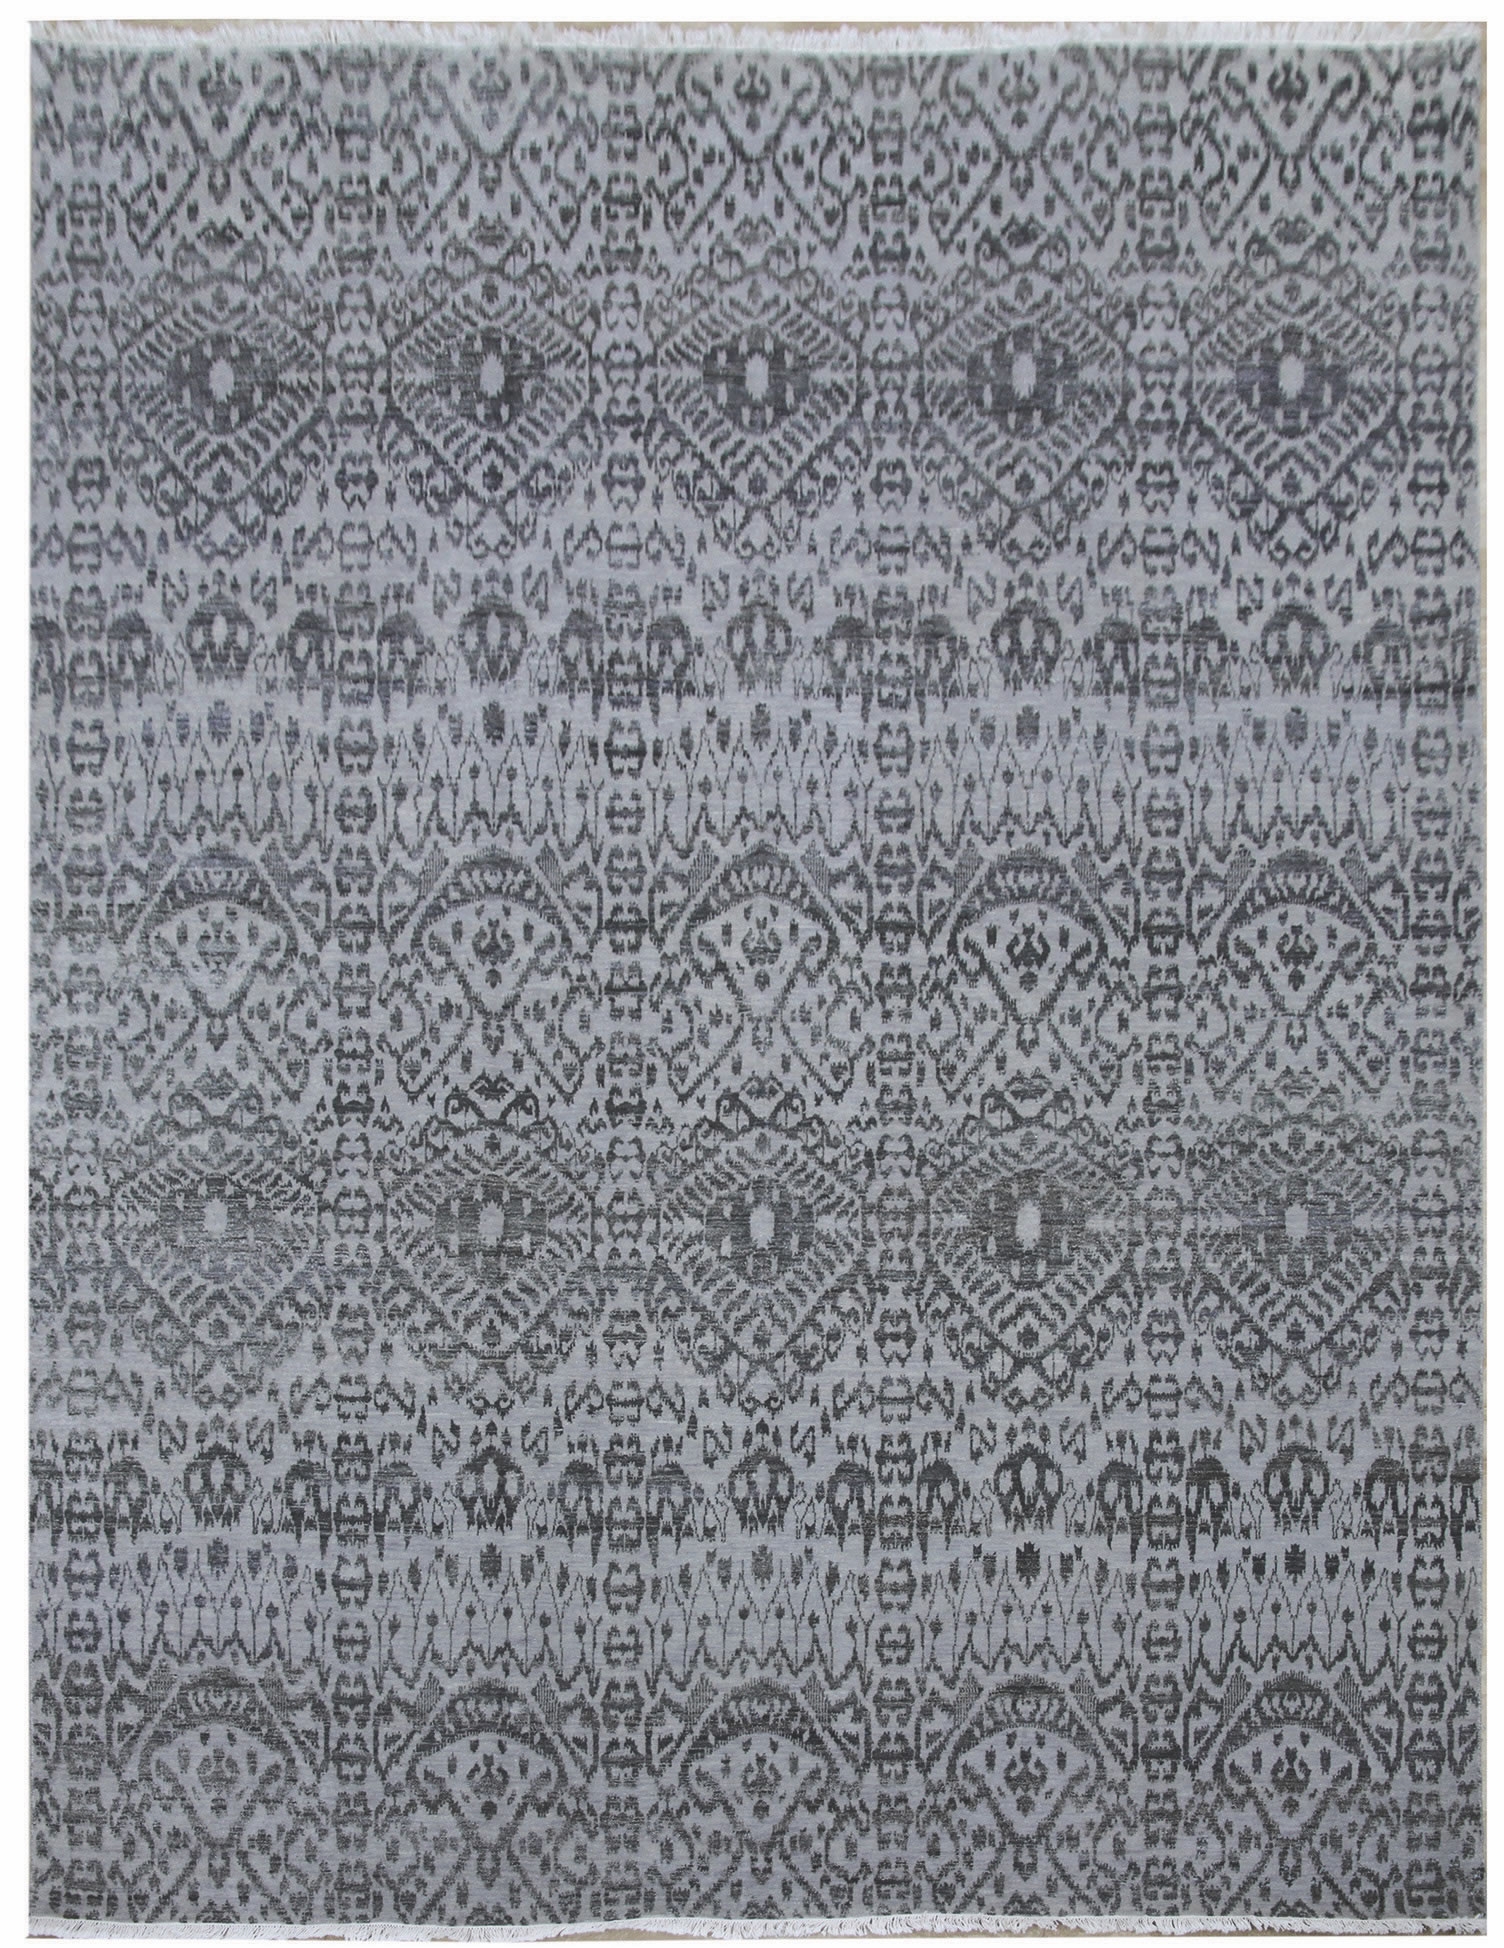 Ručne viazaný kusový koberec Diamond DC-EKT L silver / black - 120x170 cm Diamond Carpets koberce 